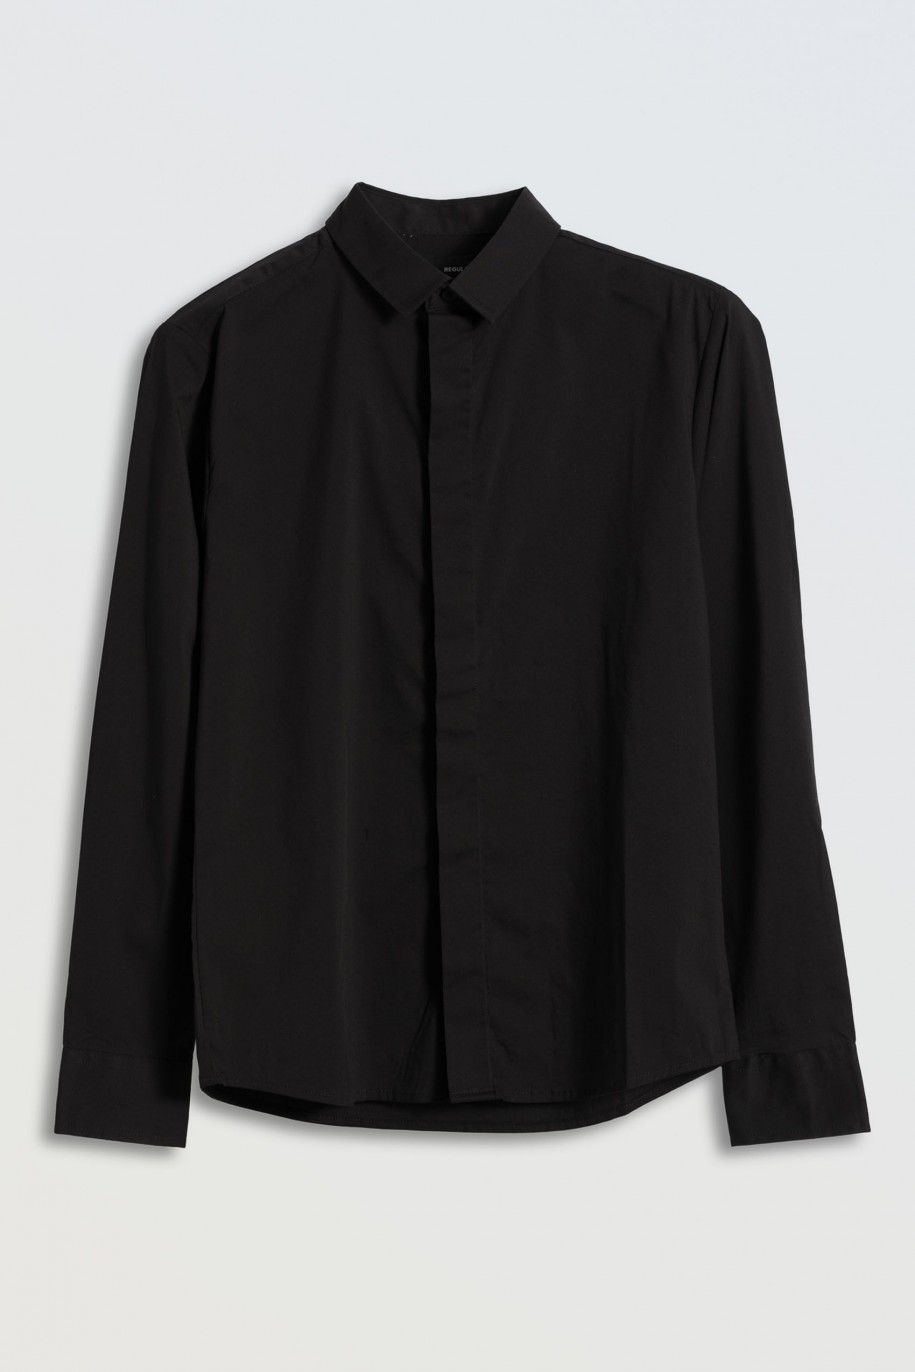 Czarna koszula z długim rękawem zapinana na guziki - 45853